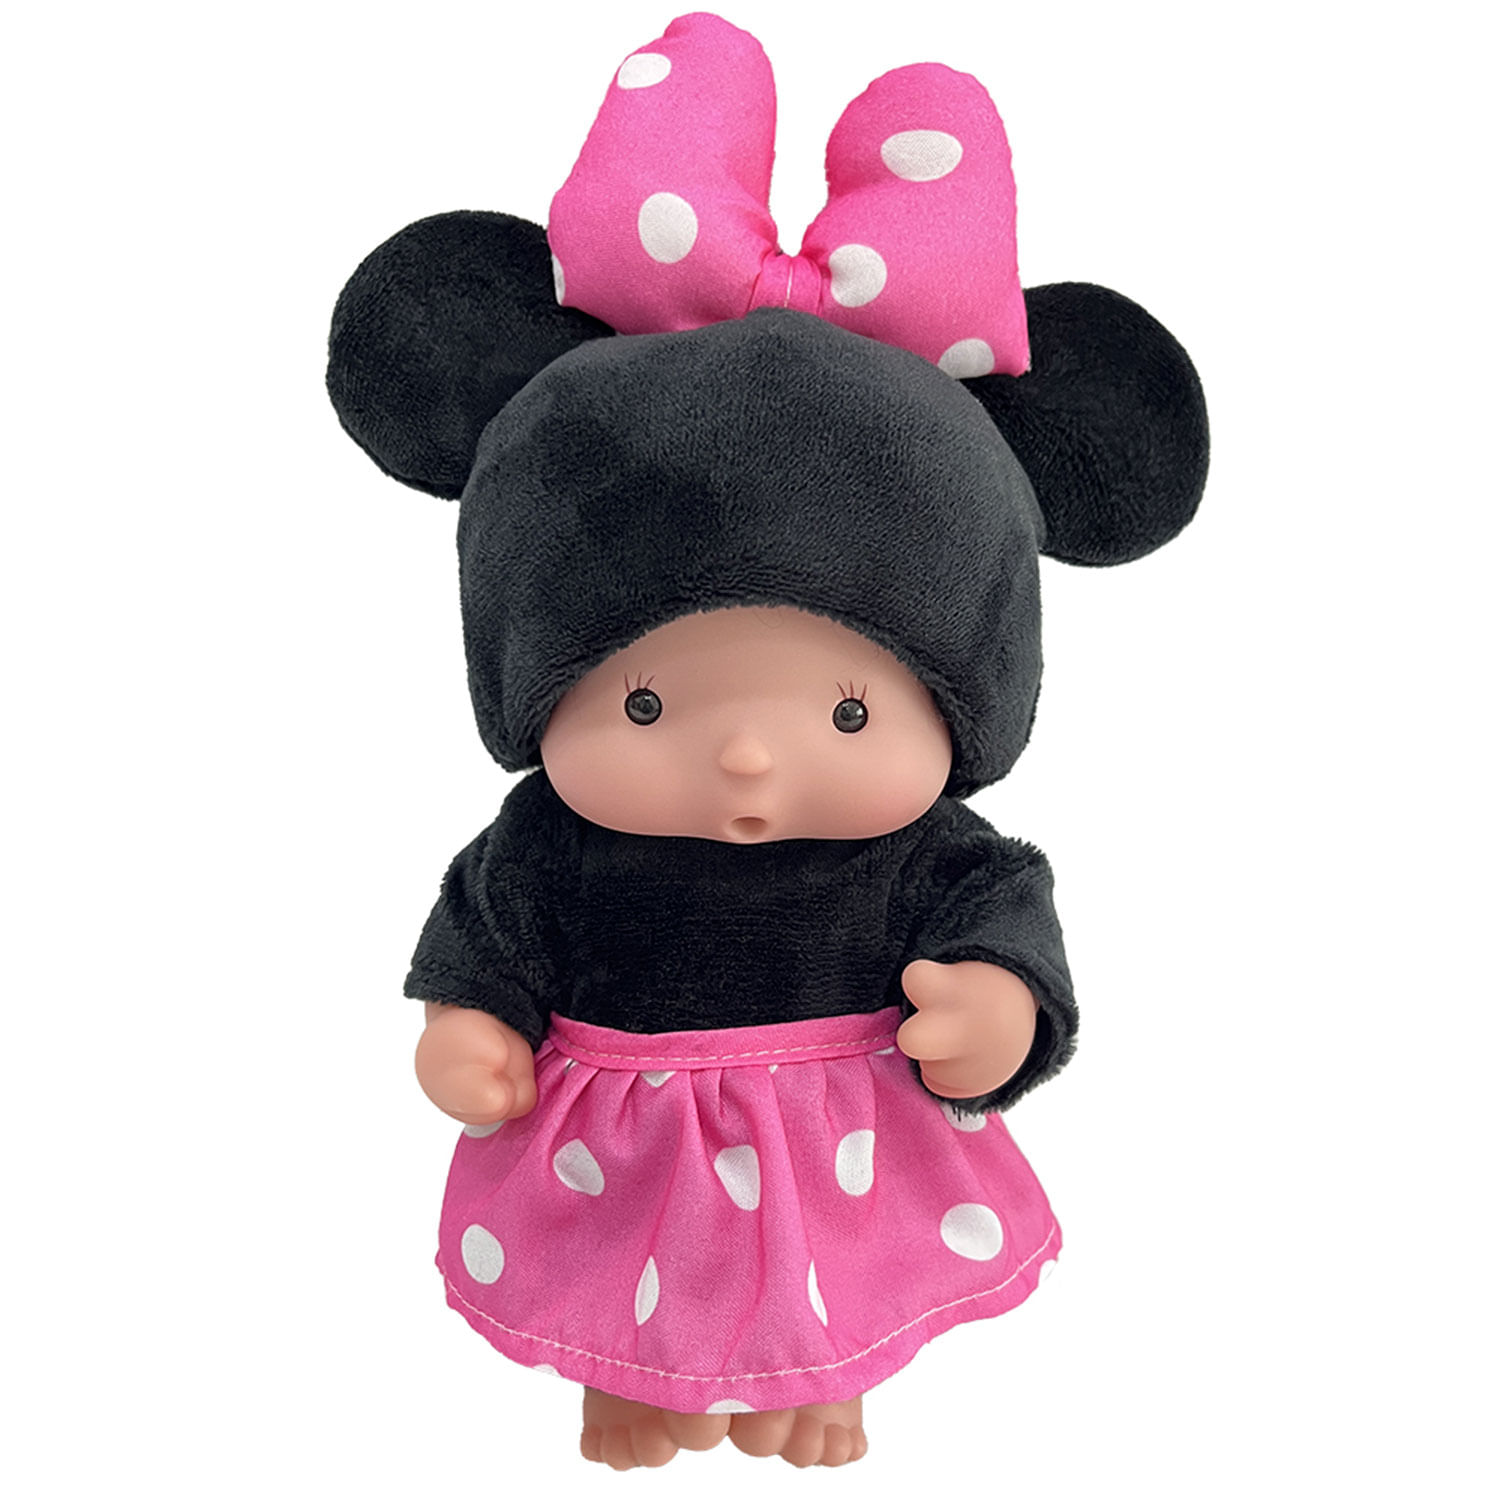 Muñeca de Disney Minnie Mouse